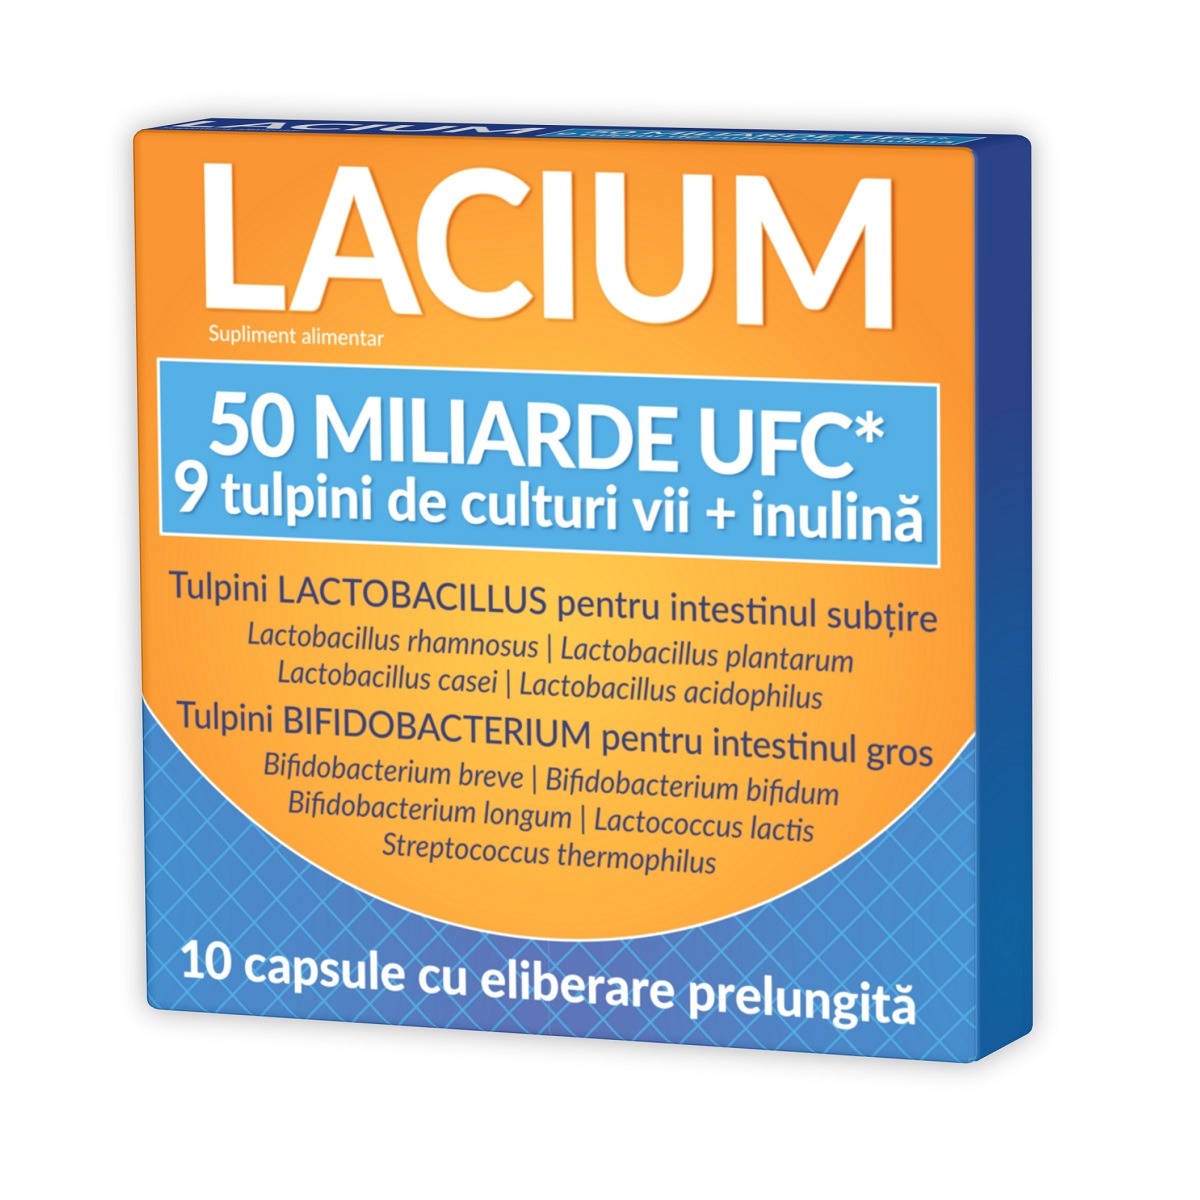 Probiotice si Prebiotice - Lacium 50 miliarde UFC, 10 capsule, Natur Produkt, sinapis.ro